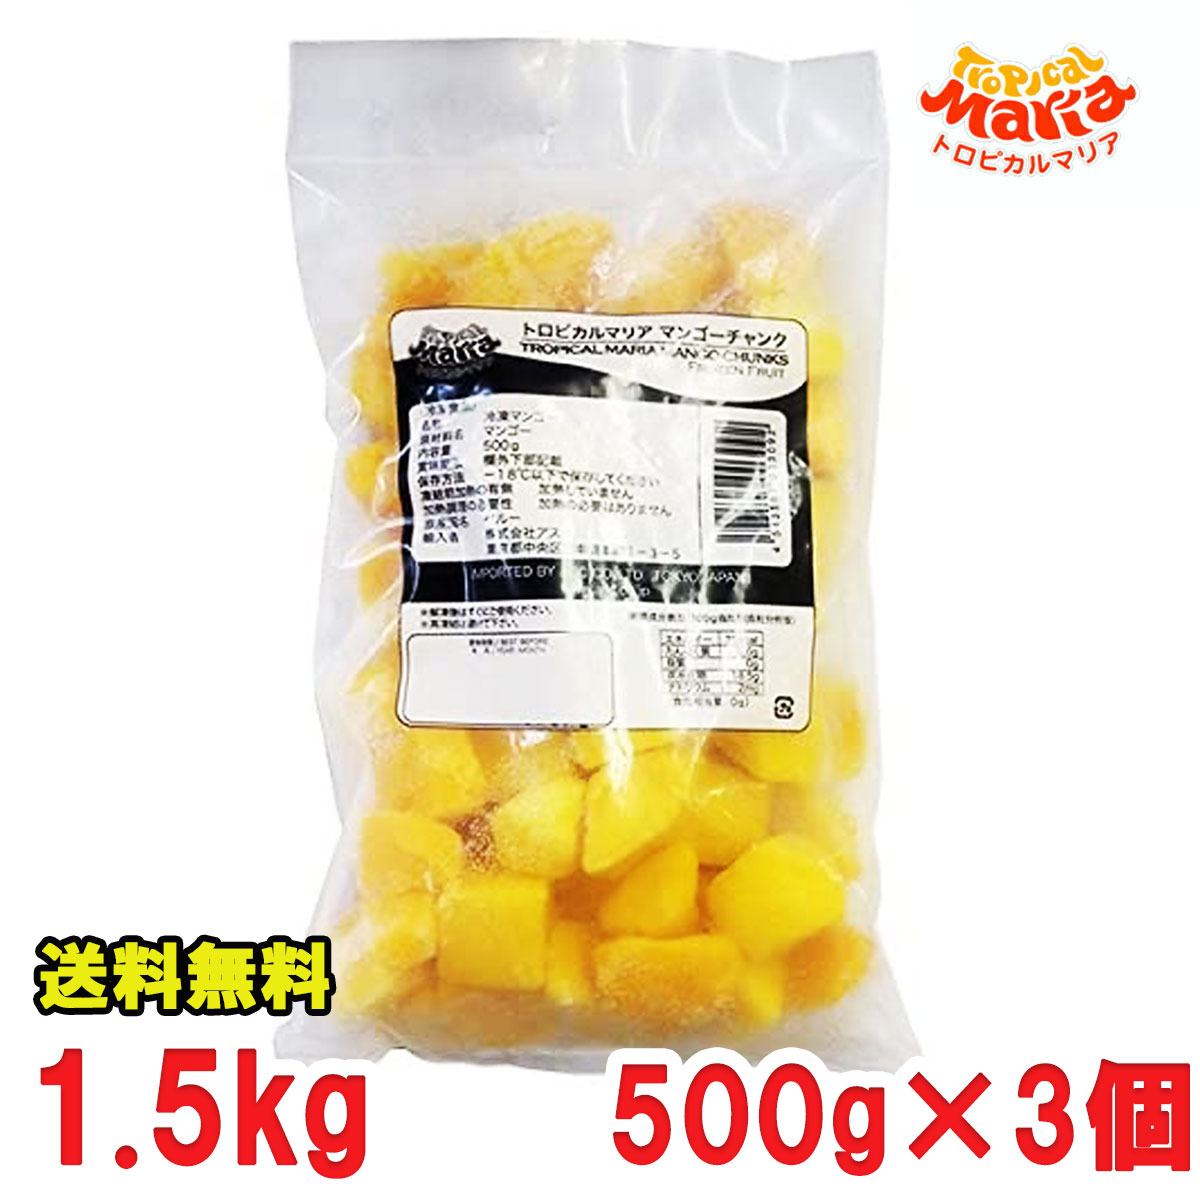 冷凍 マンゴー チャンク トロピカルマリア 1.5kg 業務用 レストラン マンゴー 送料無料